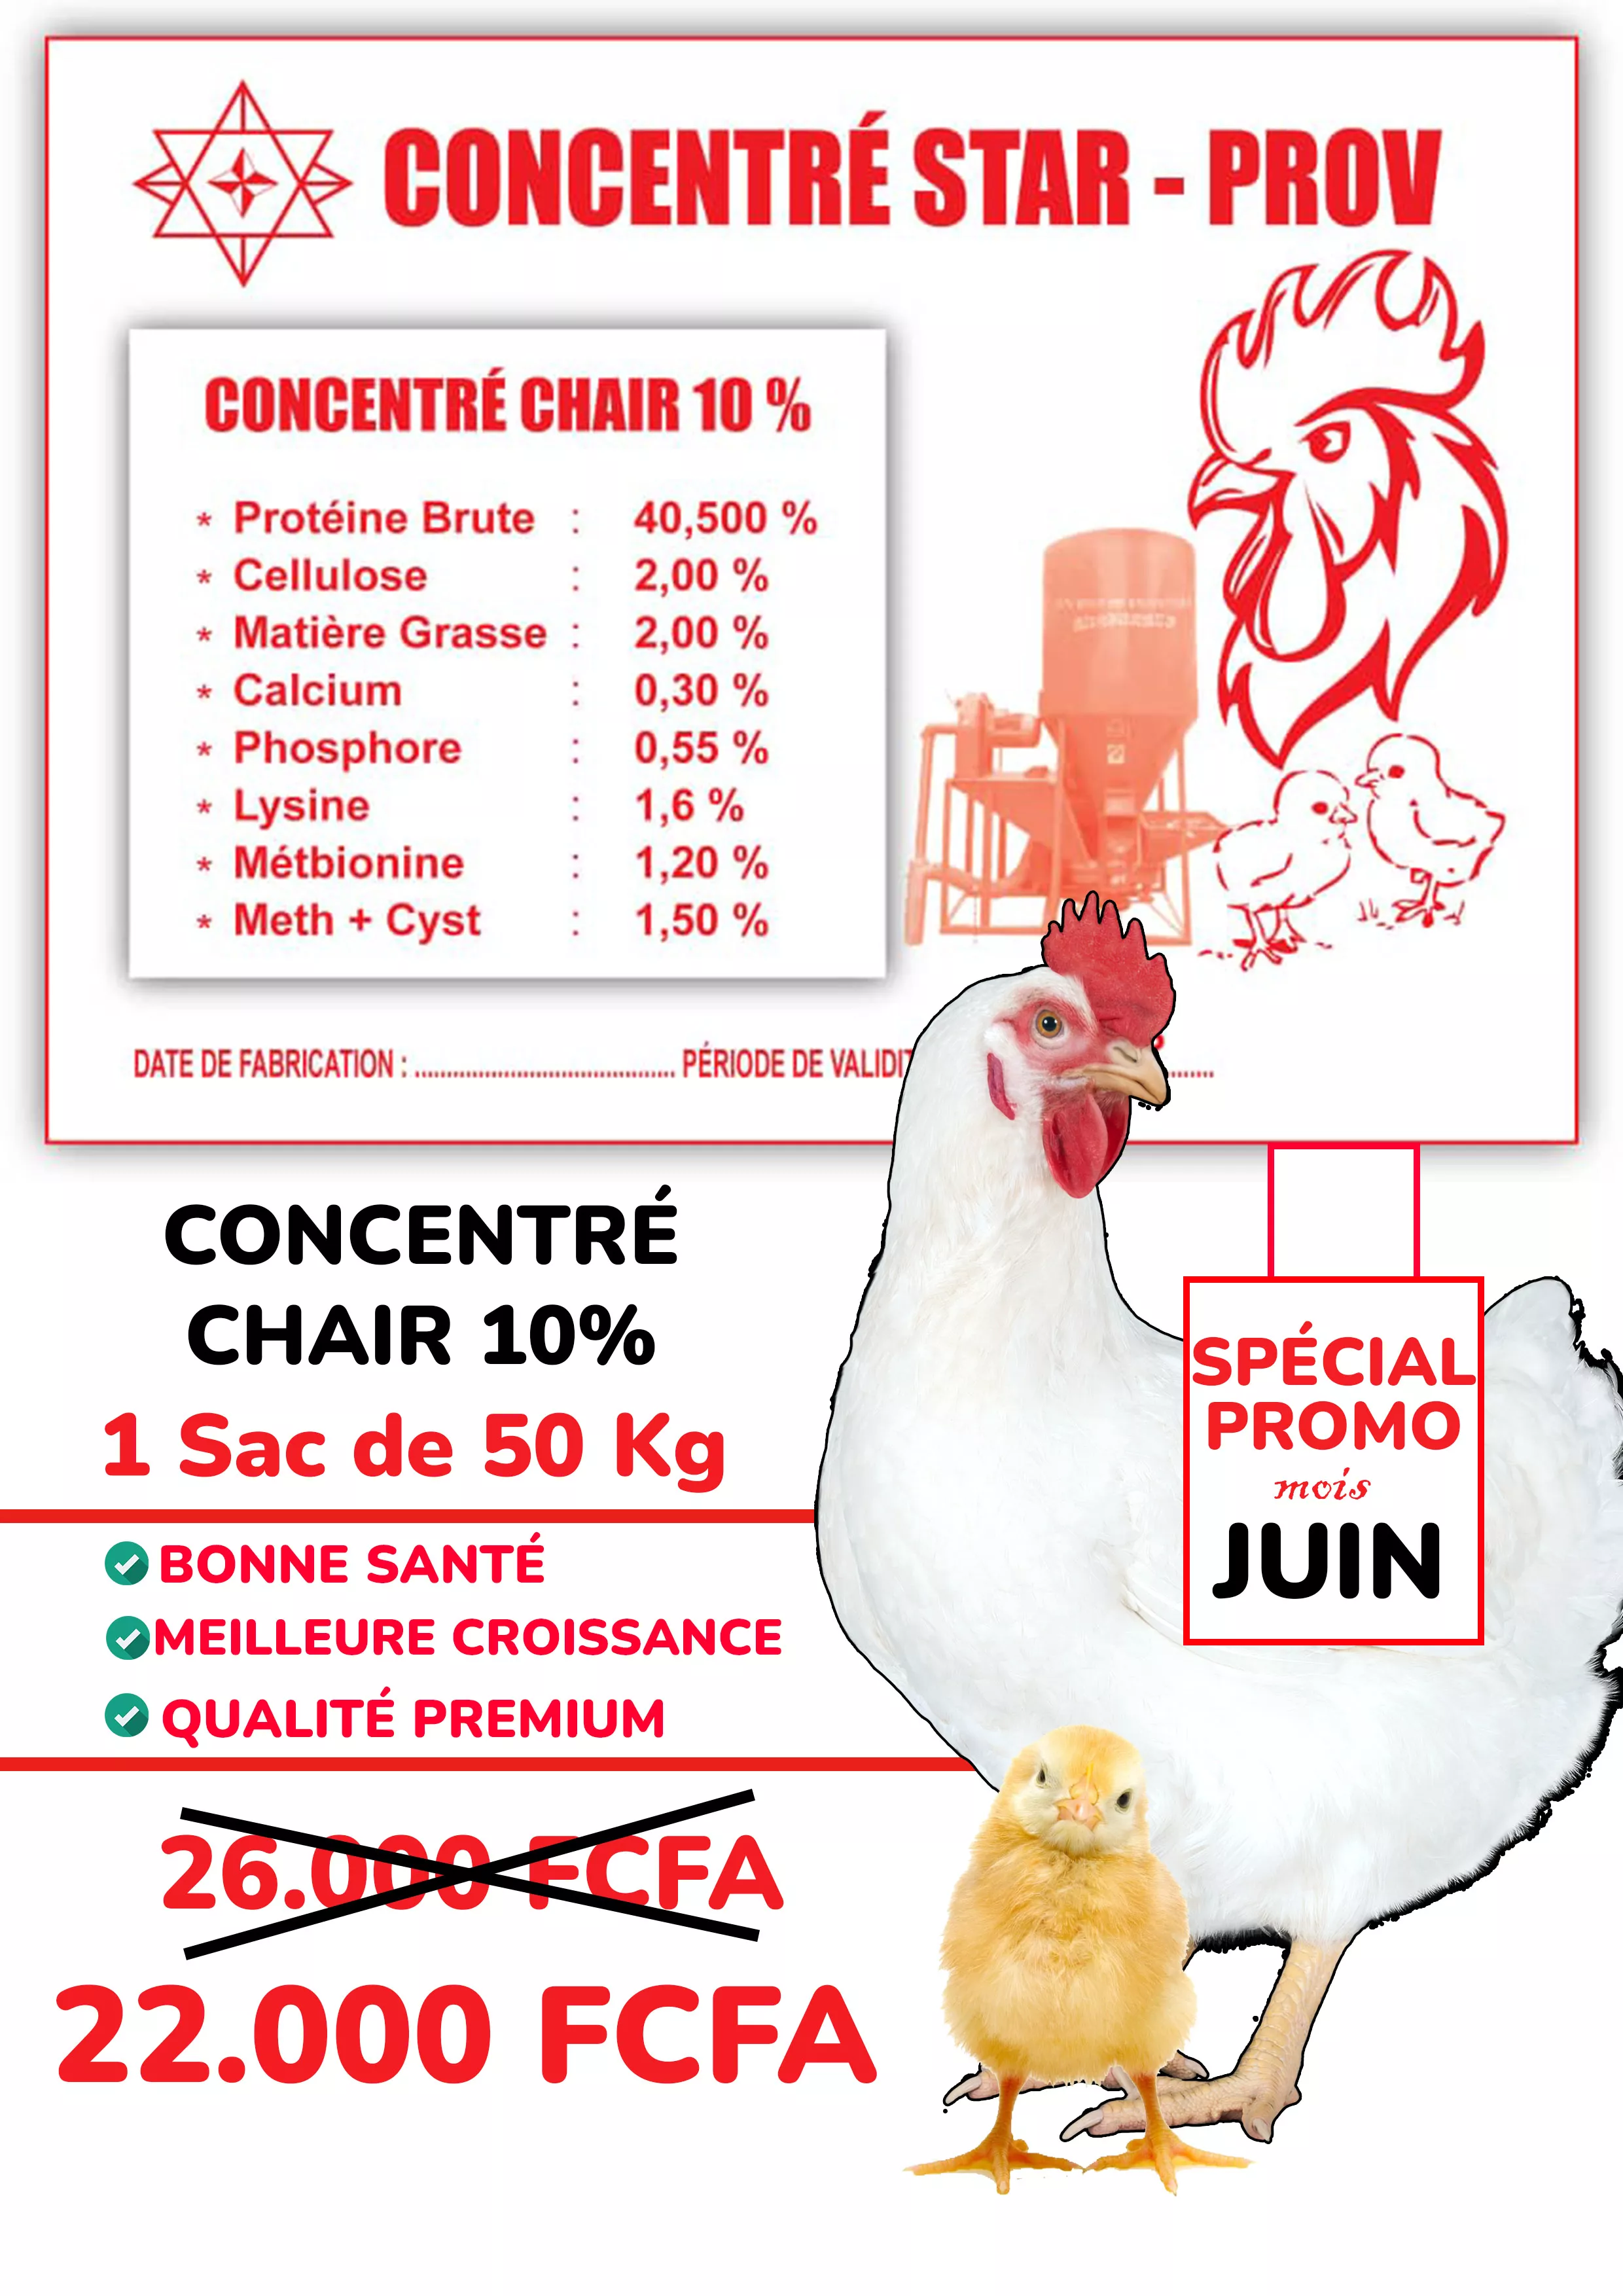 Concentré Porc & Chair 10%, Farine de Poisson à 8000 - Petites annonces gratuites - Achat et vente à Douala, Cameroun